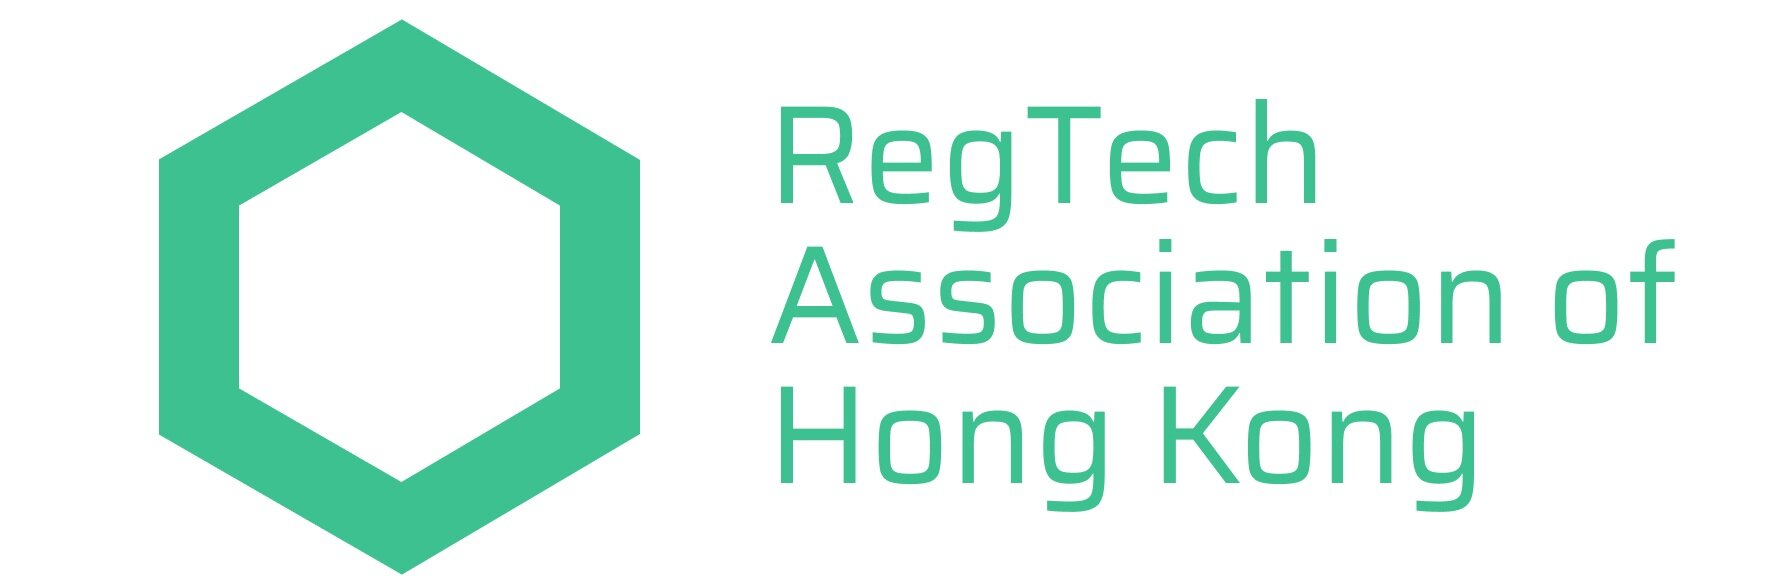 RegTech Association of Hong Kong